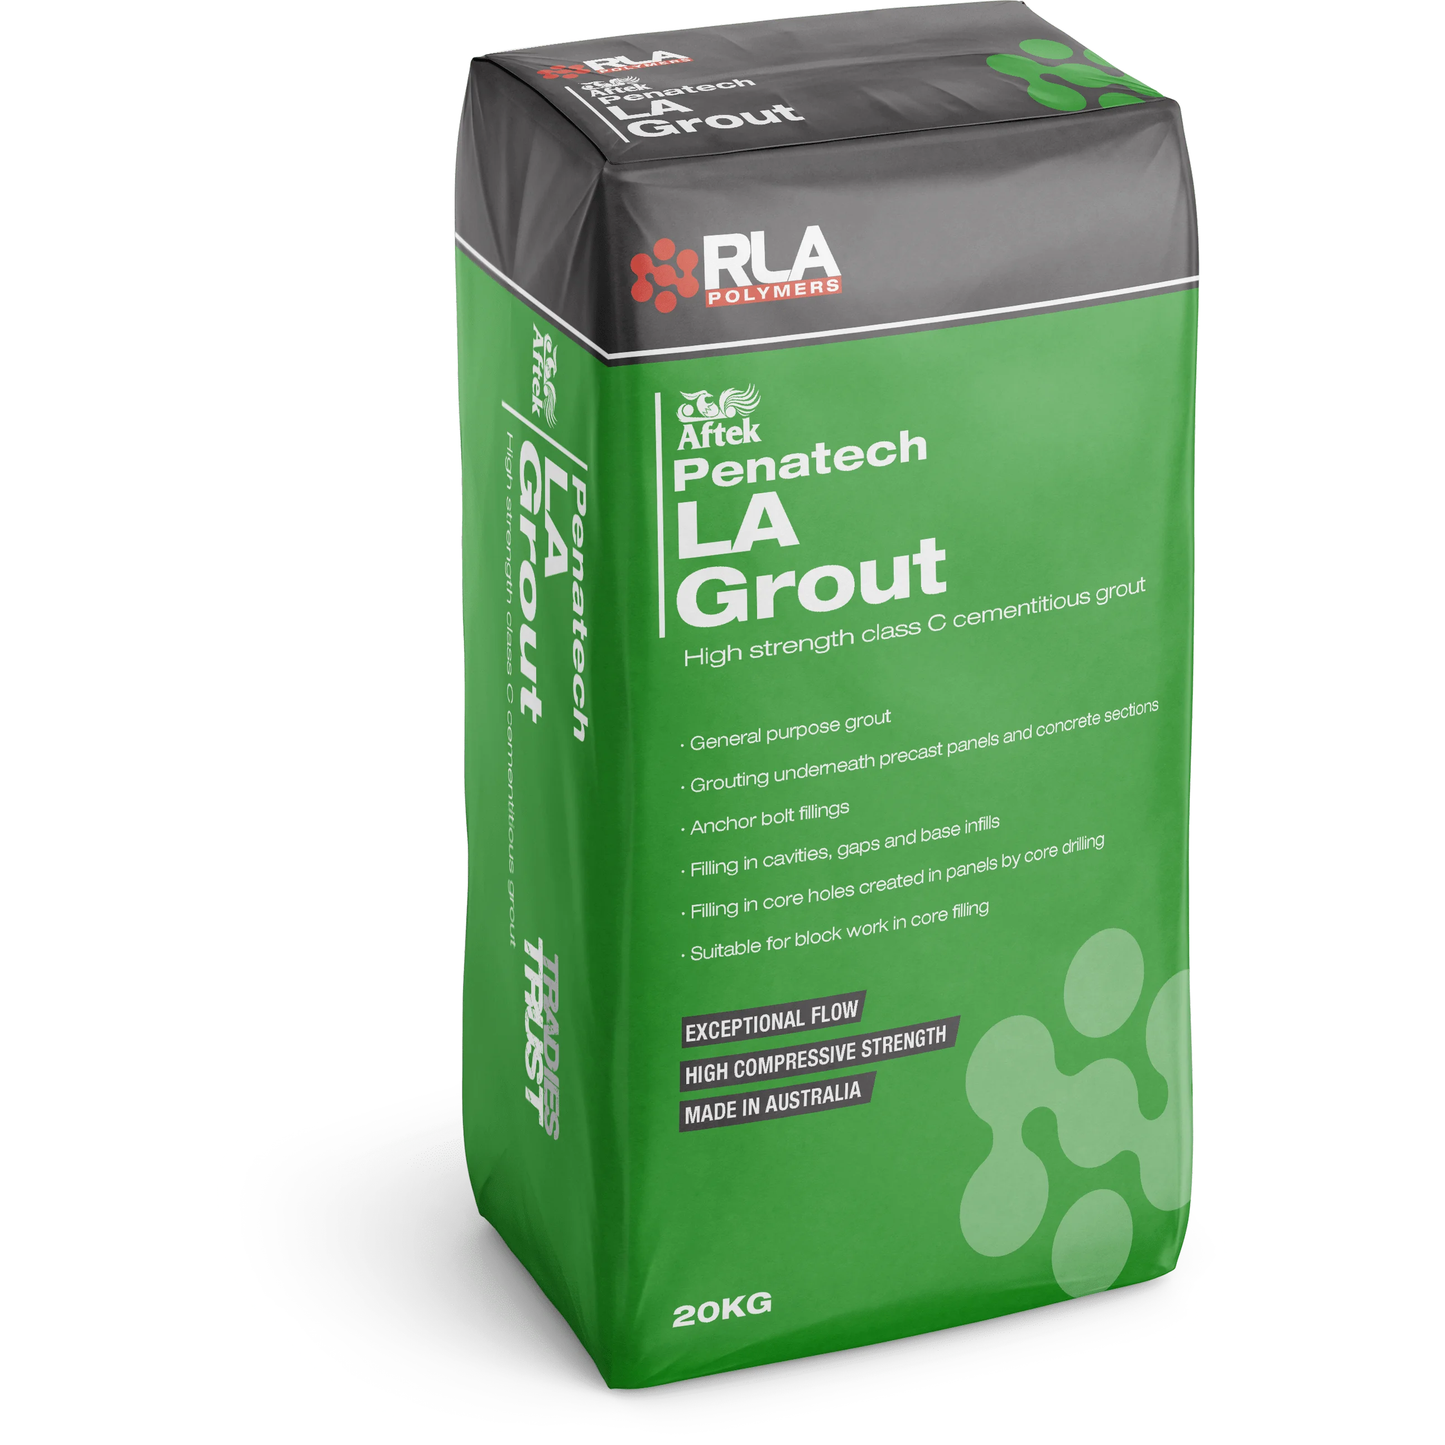 RLA Penatech LA Grout 20kg